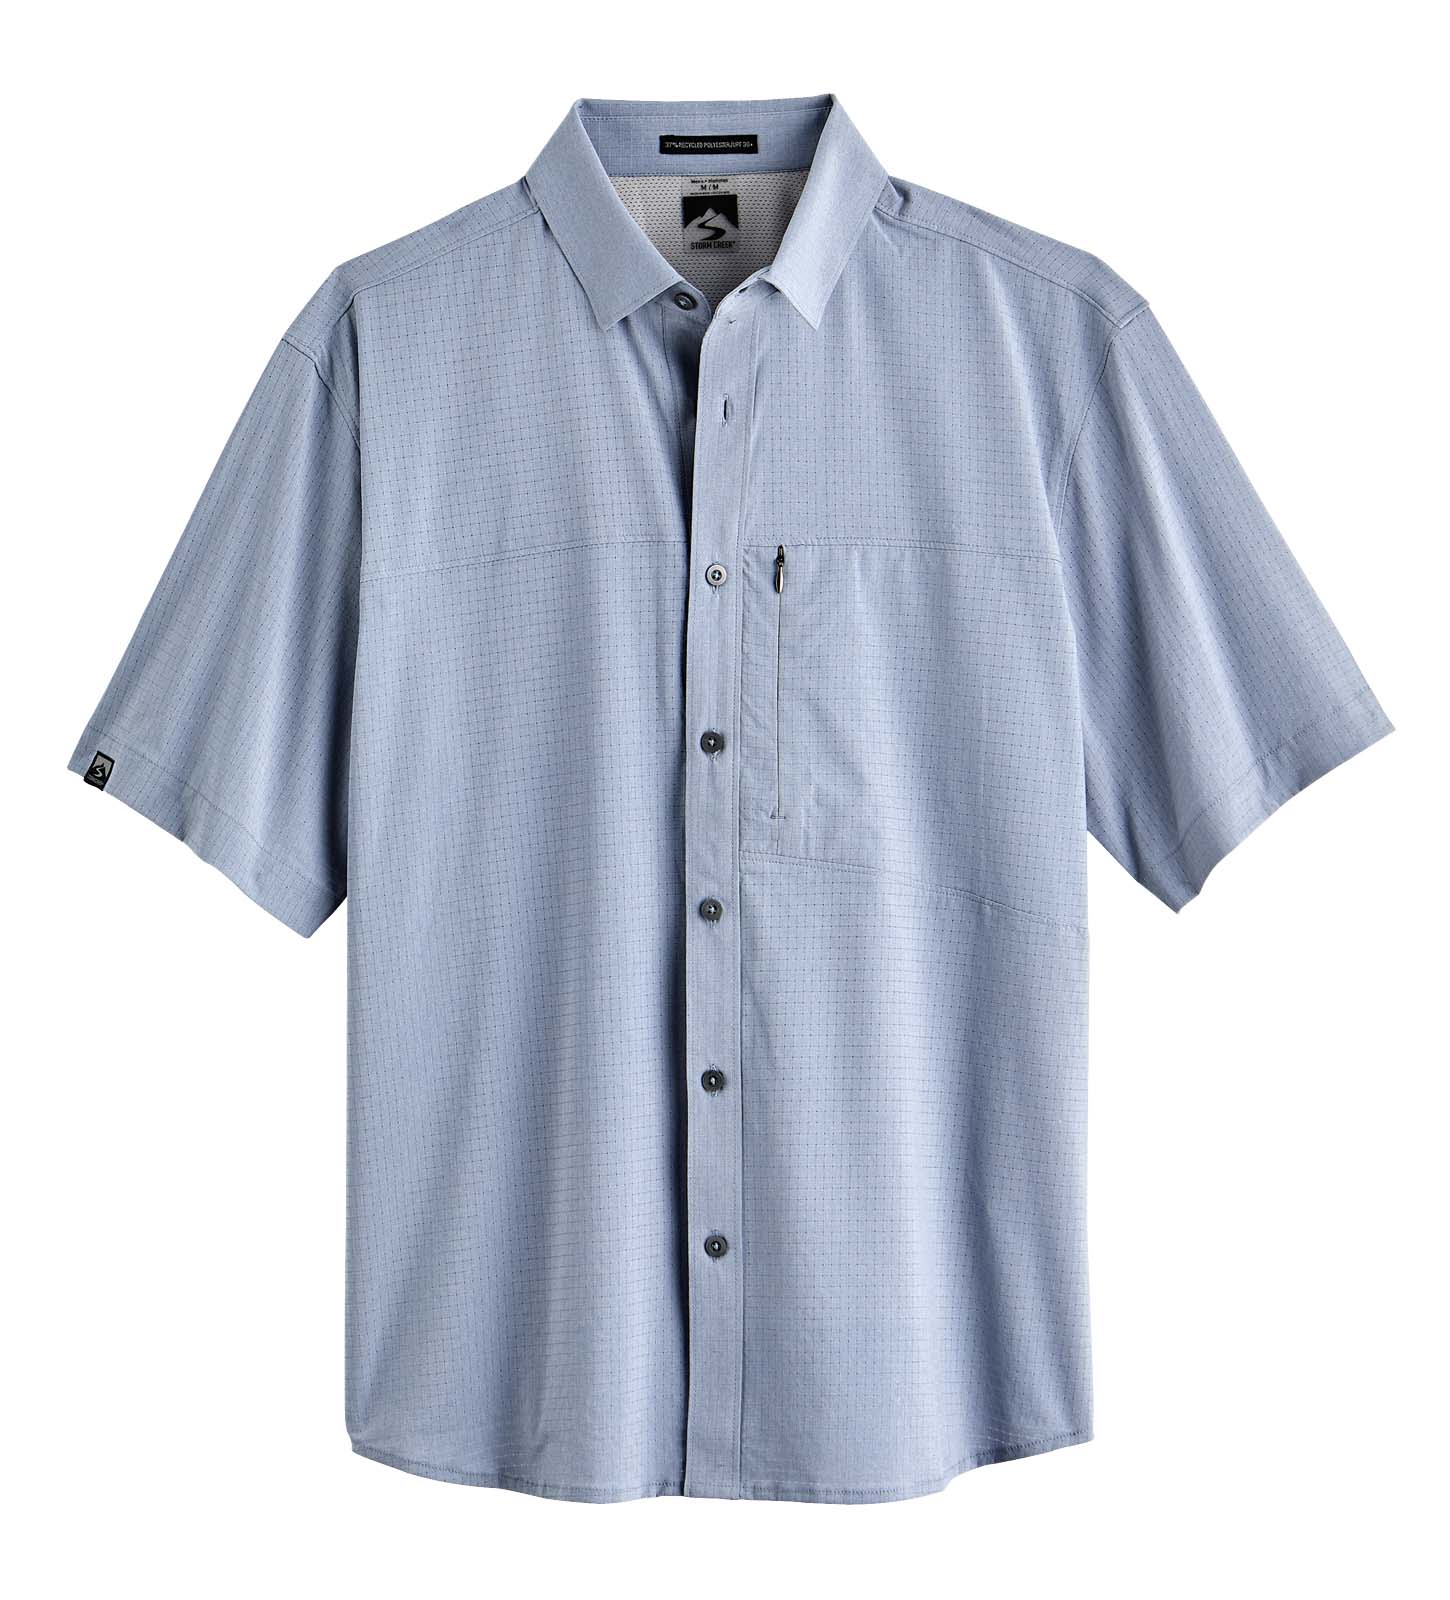 Naturalist Men's Short Sleeve Button Up Shirt, Blue Mist / L